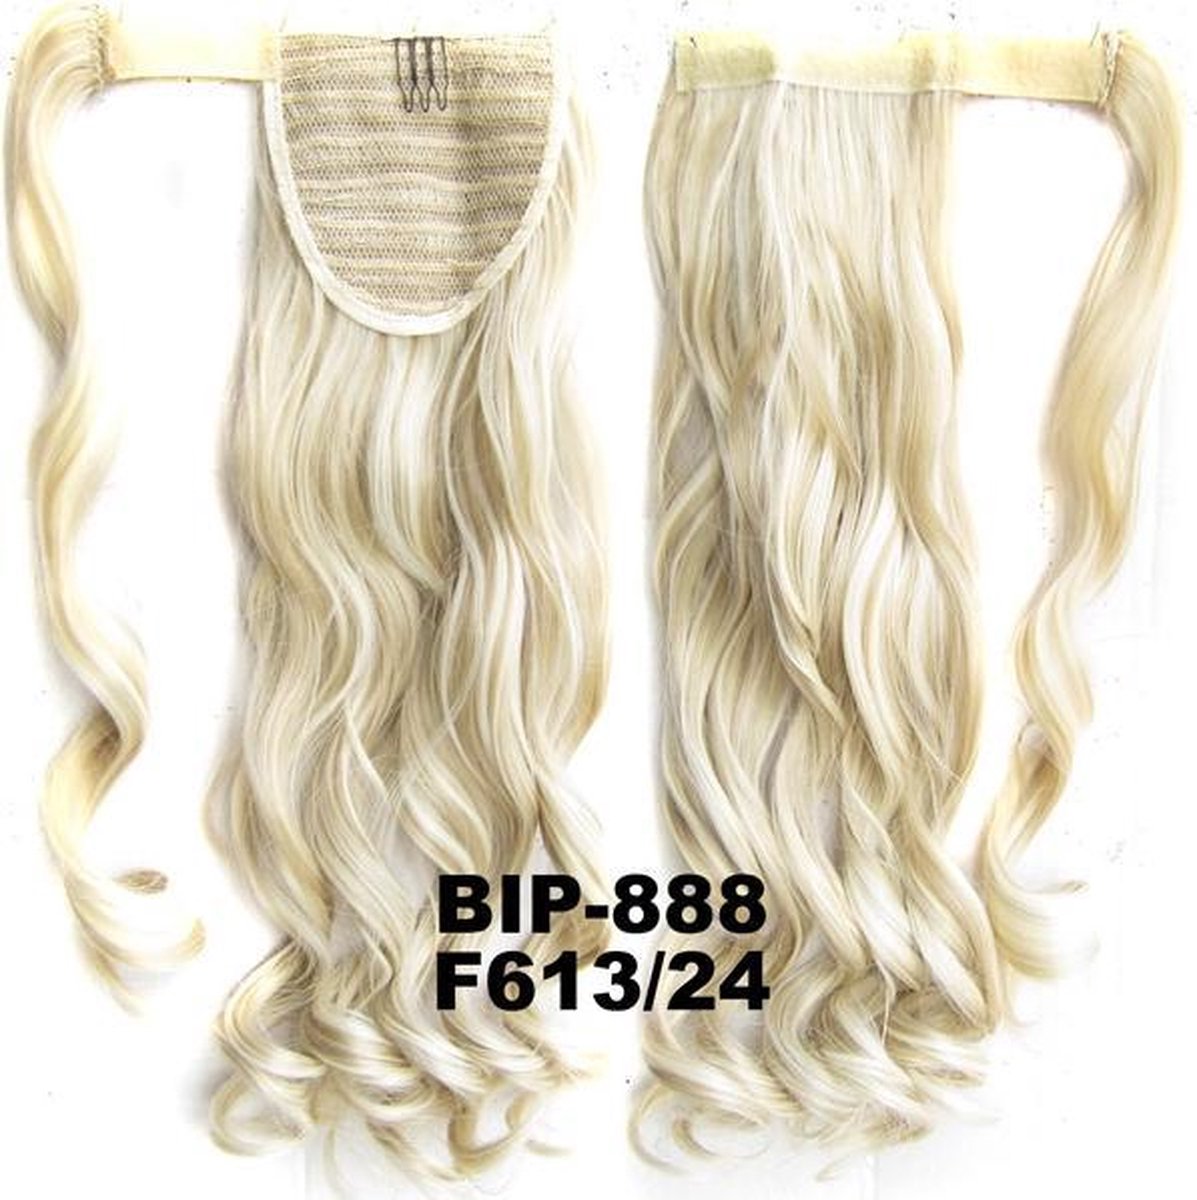 Wrap Around paardenstaart, ponytail hairextensions wavy blond - F613/24